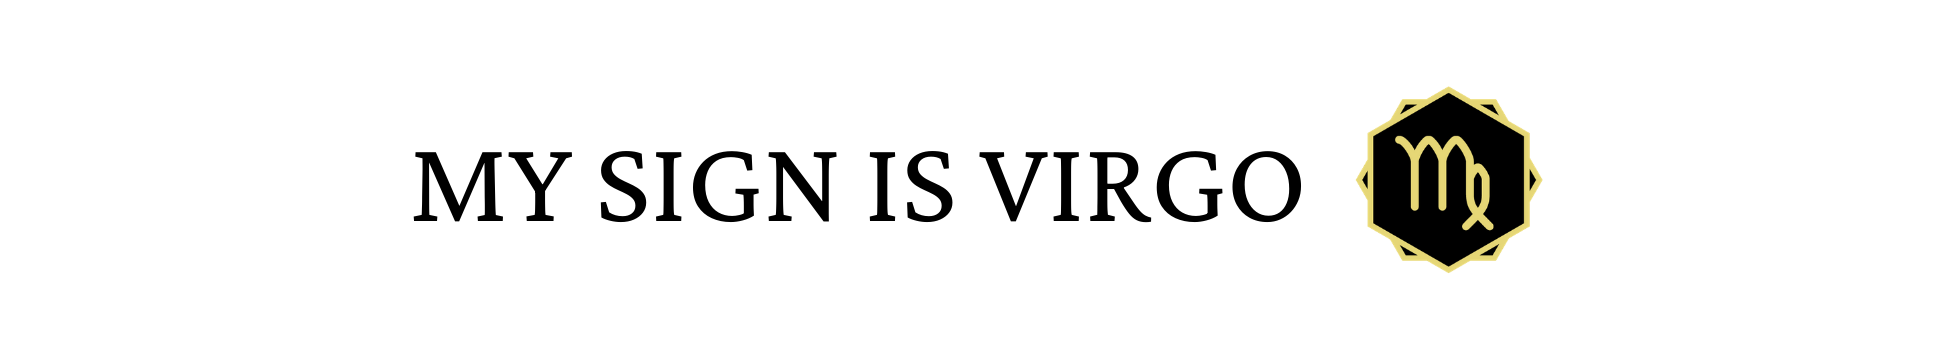 My Sign Is Virgo